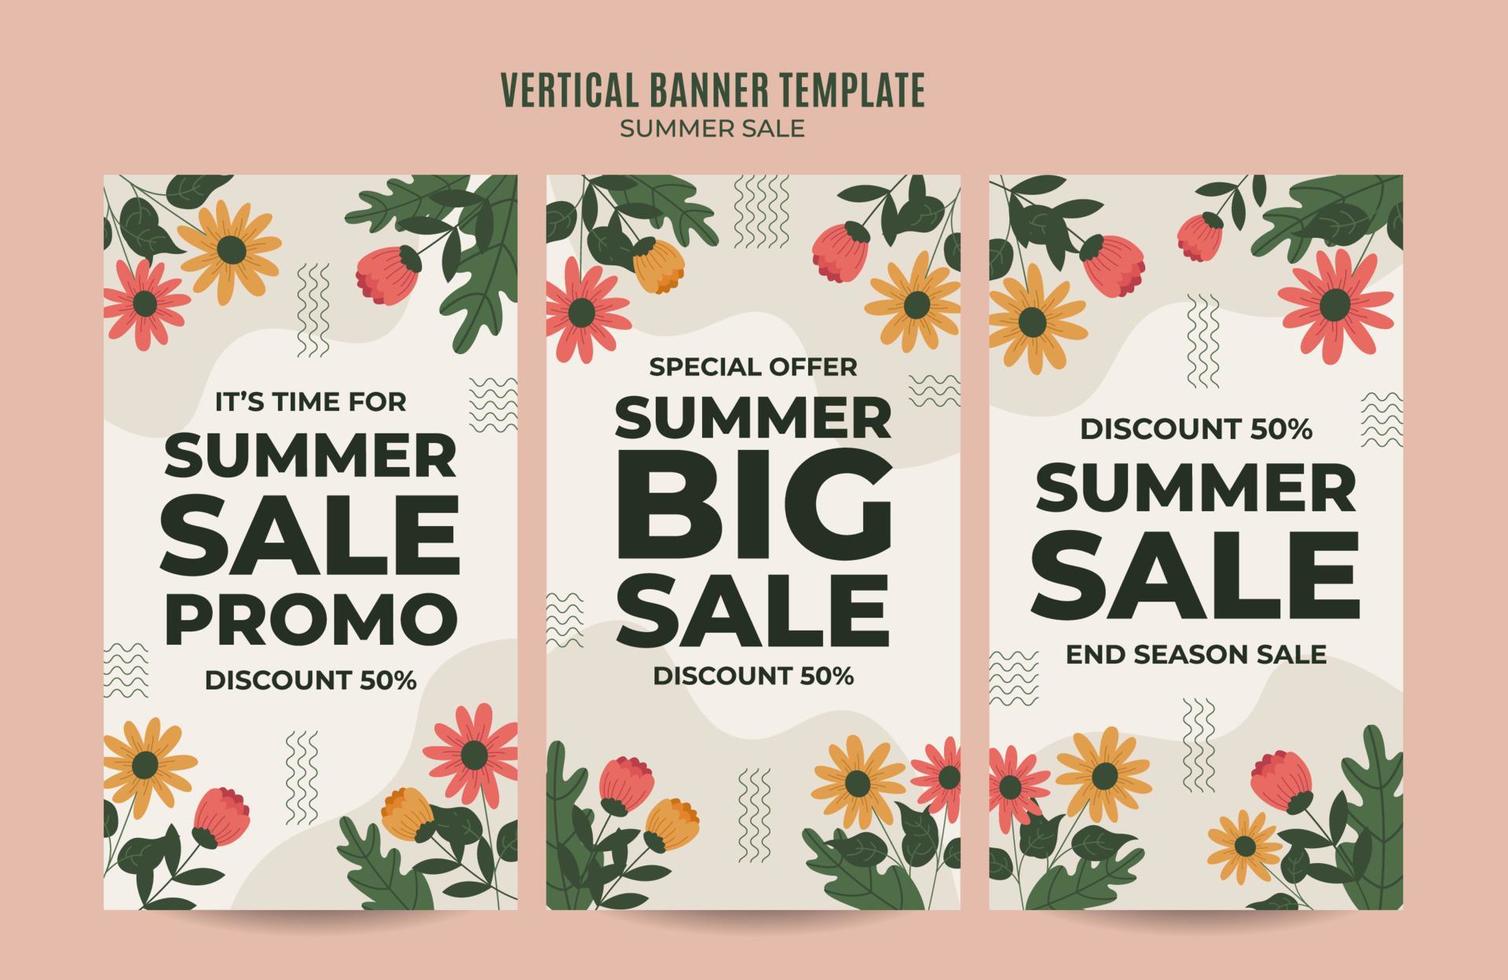 banner web di vendita felice estate per poster verticale, banner, area spaziale e sfondo dei social media vettore